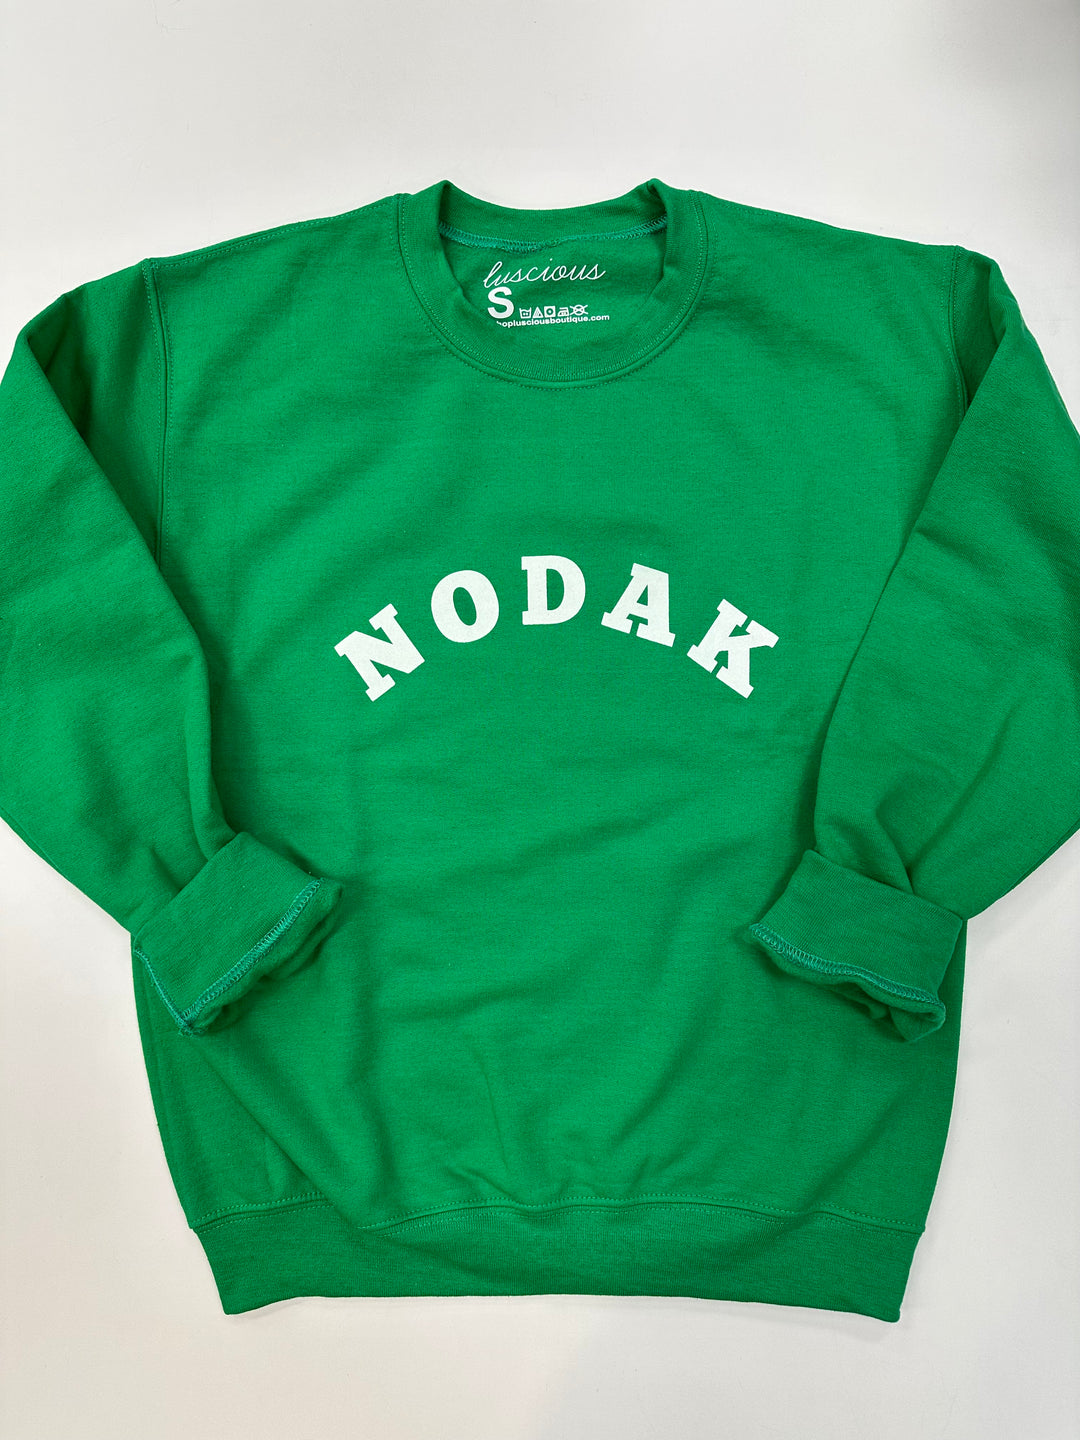 NoDak Kelly Green Collegiate Crewneck Sweatshirt